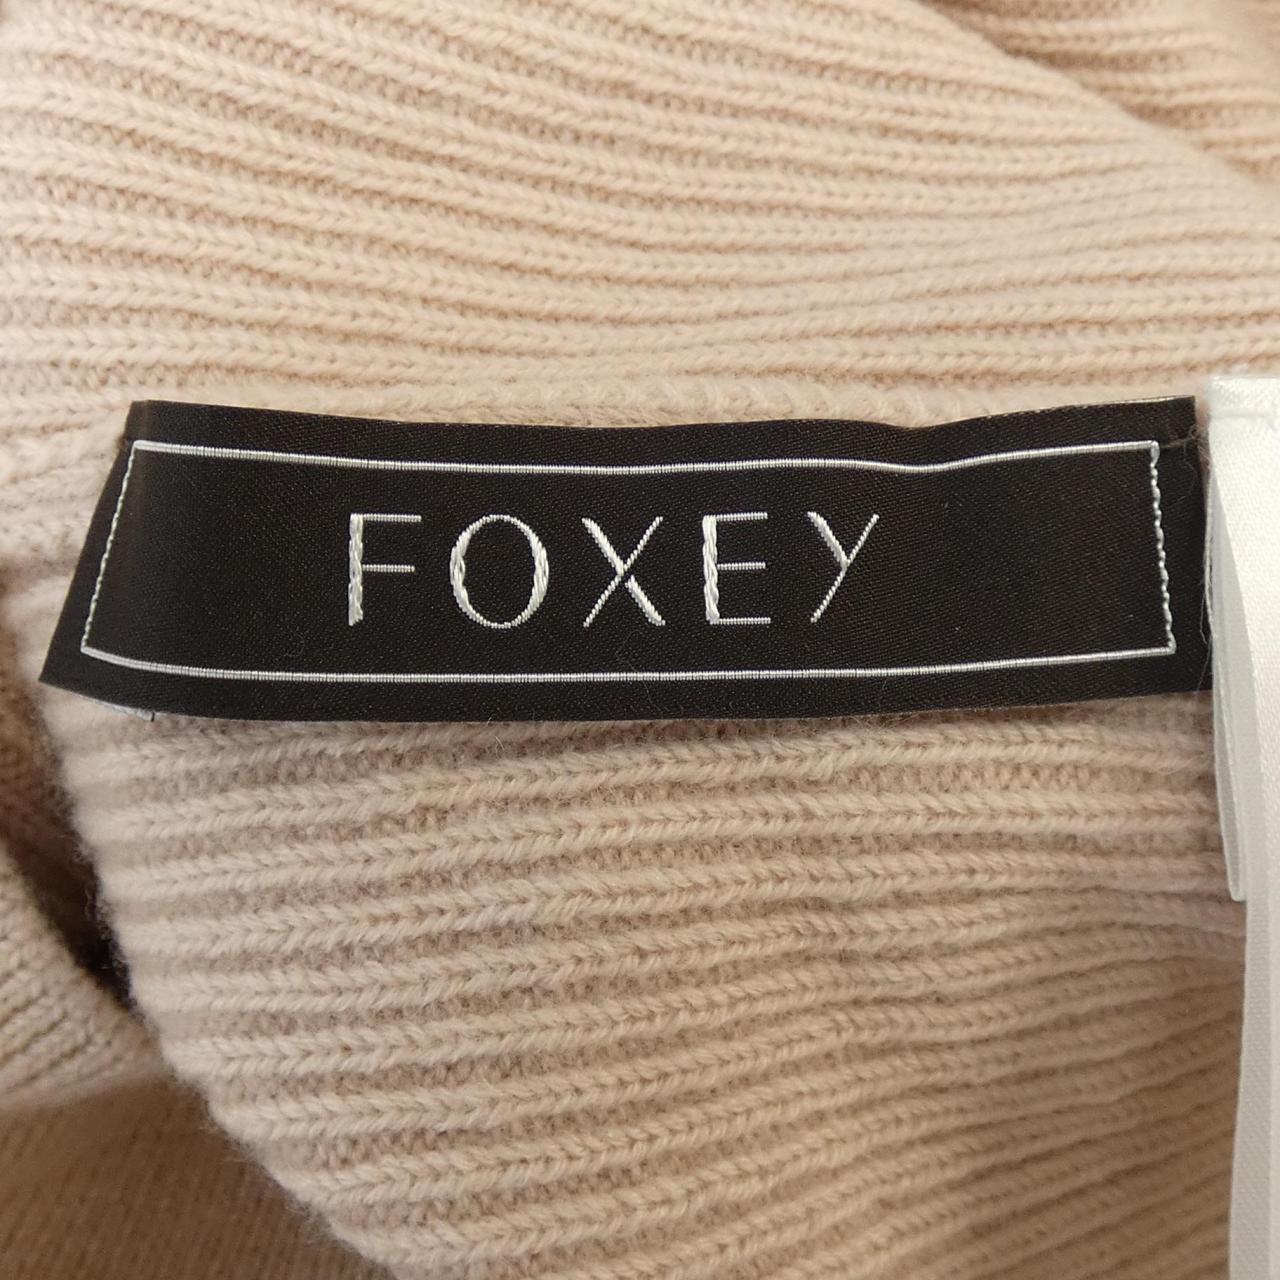 Foxy FOXEY Knit